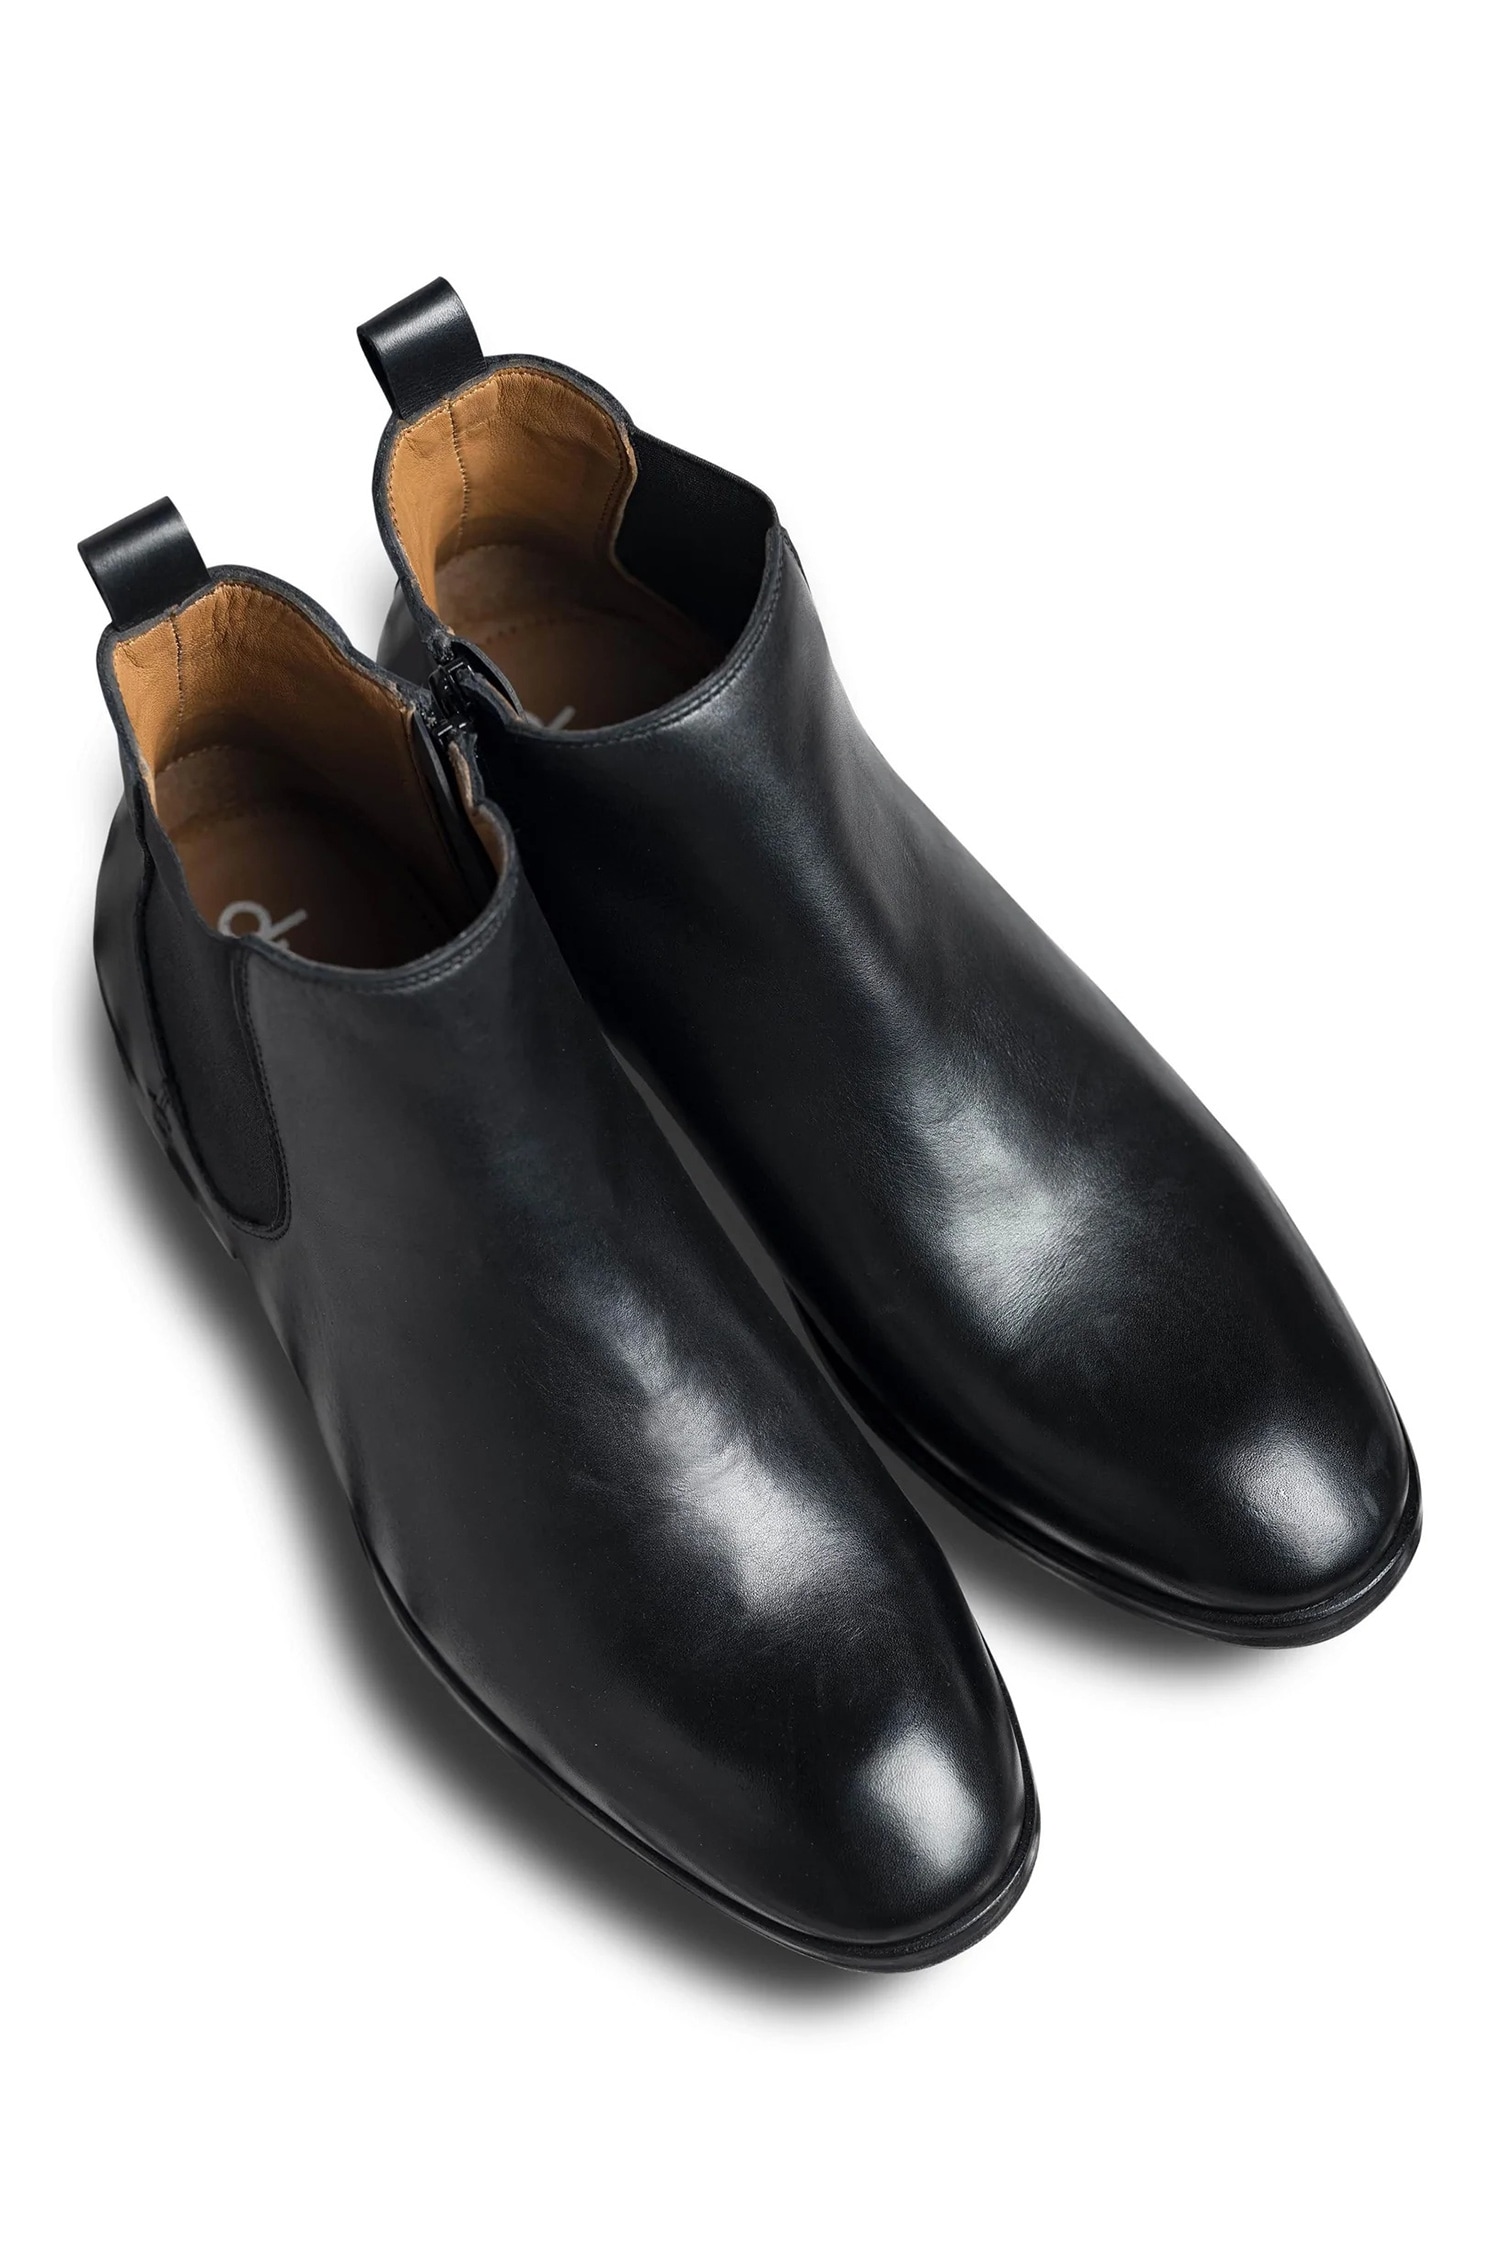 Dmodot Black Leather Sprazzo Nera Chelsea Boots